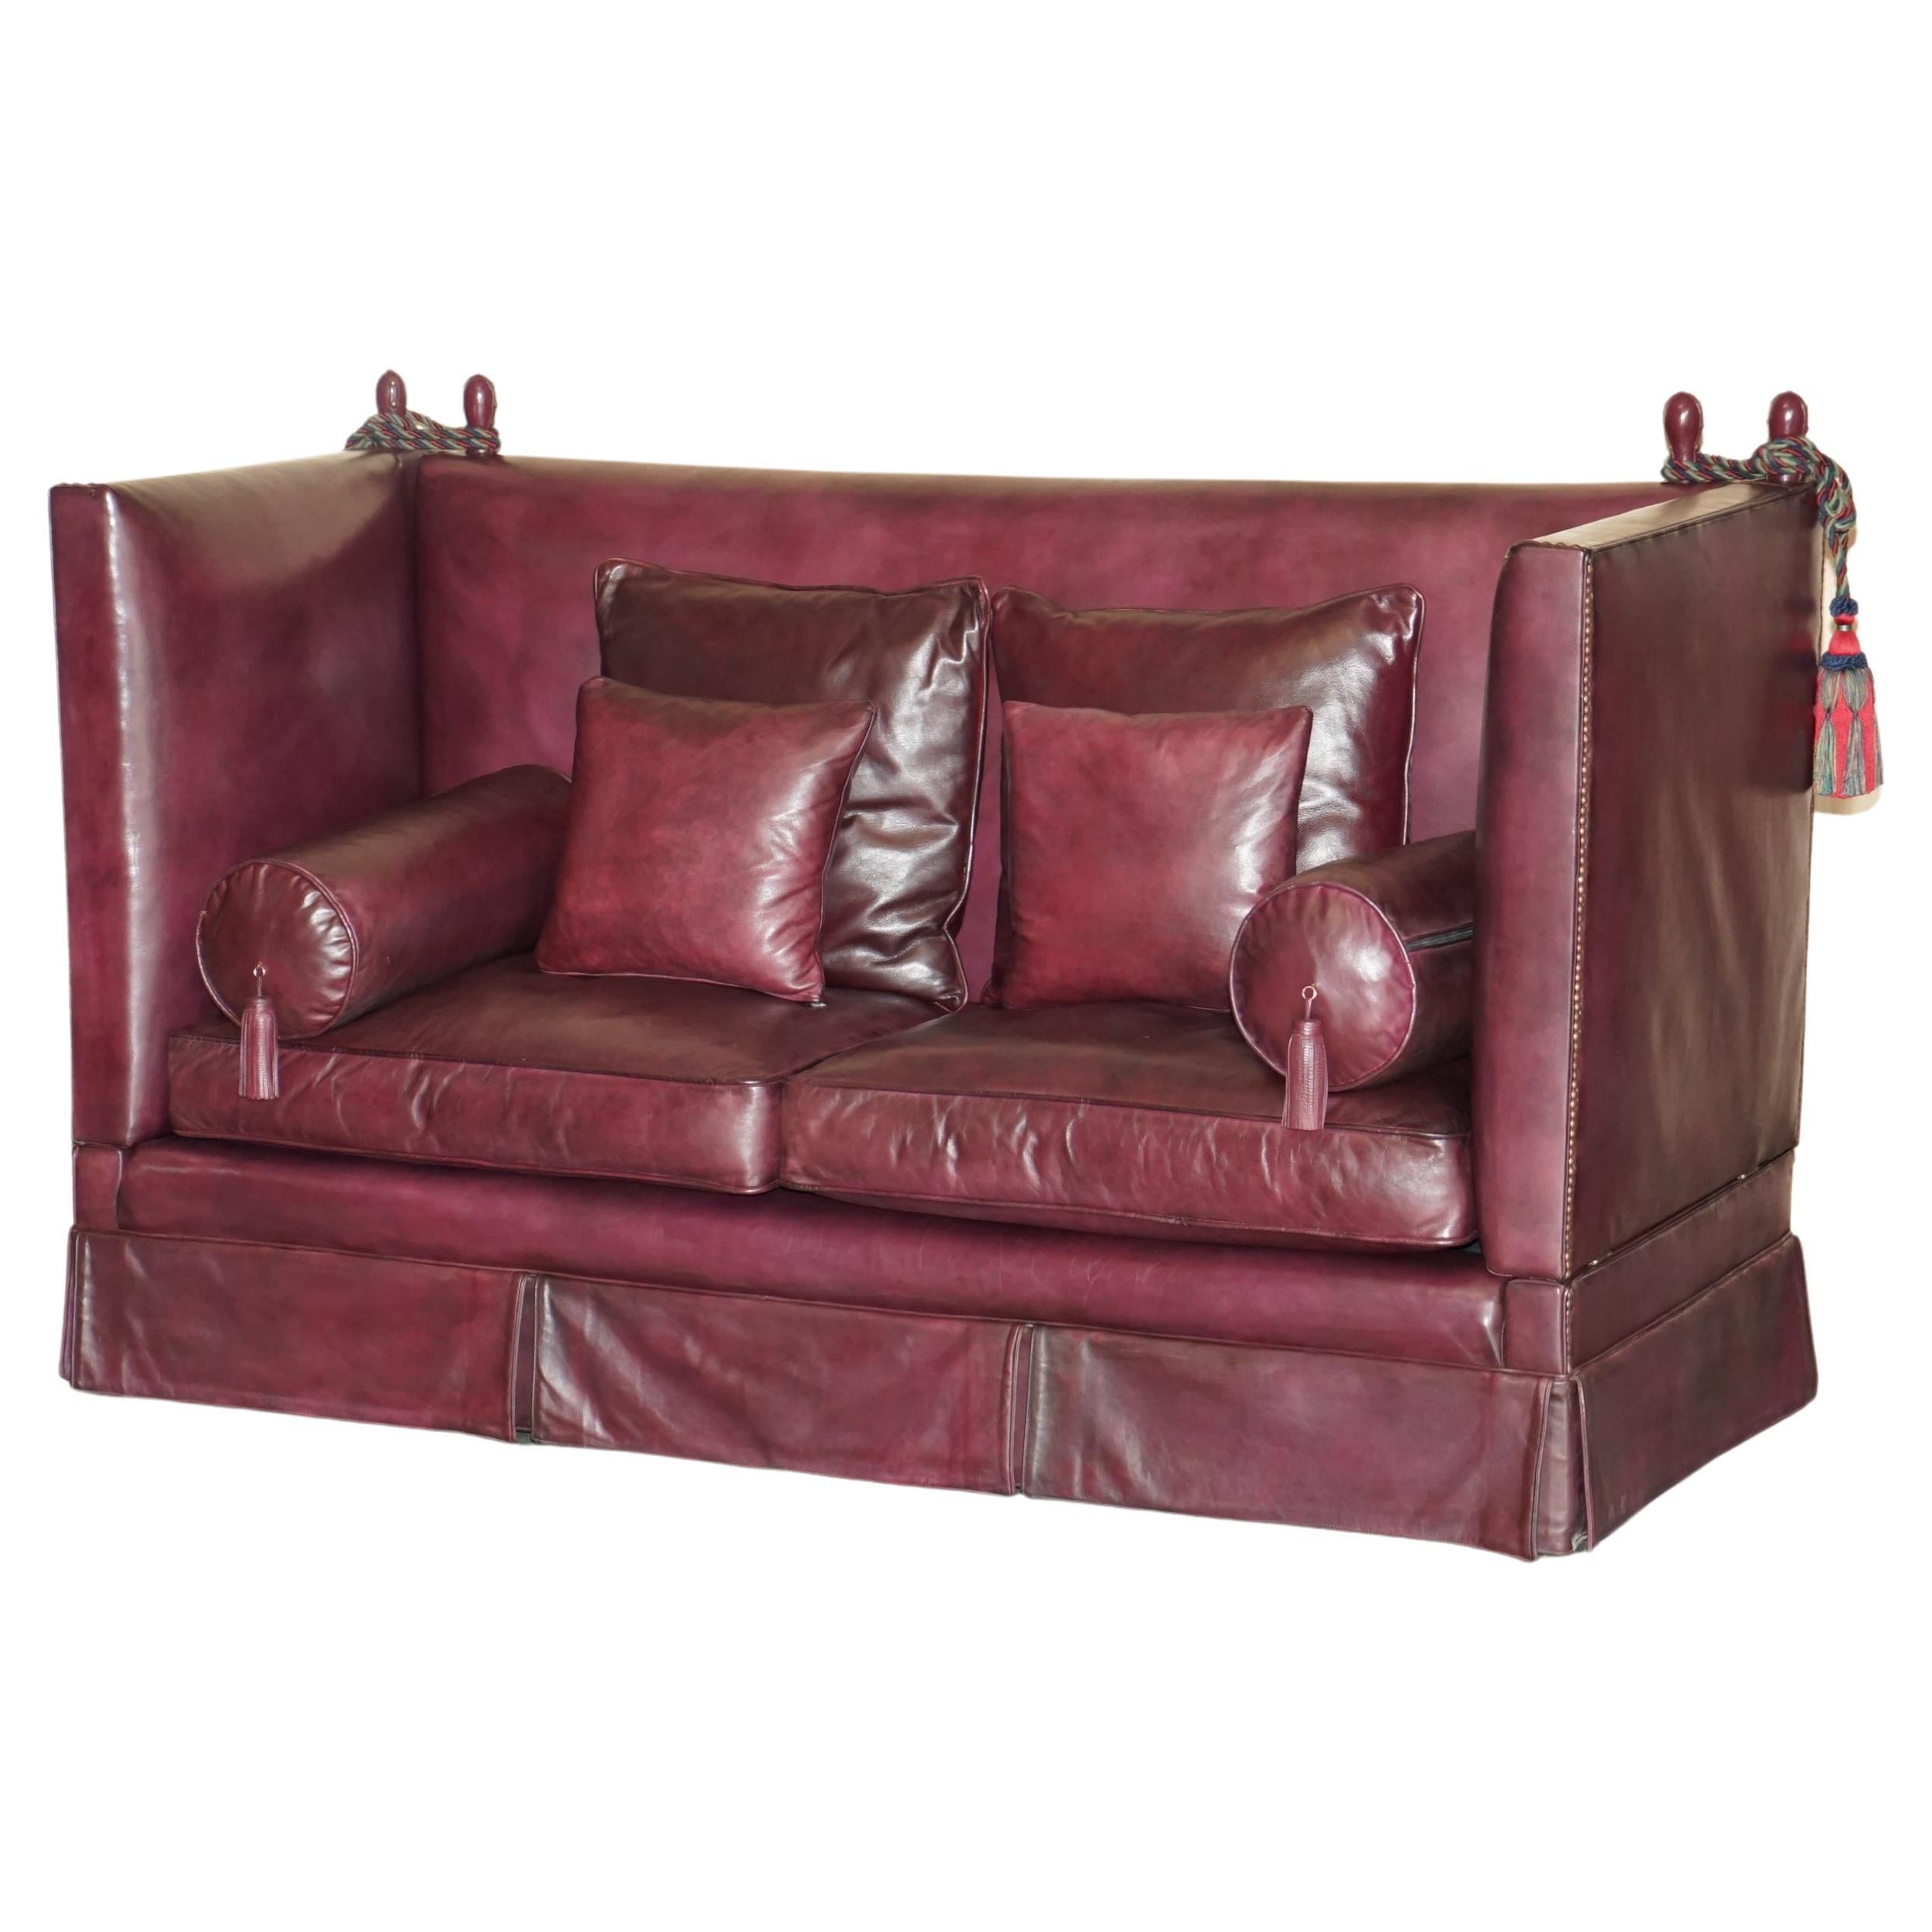 Vollständig restaurierte antike viktorianische Ochsenblut-Knoll-Sofa mit Federfüllung und Kissen